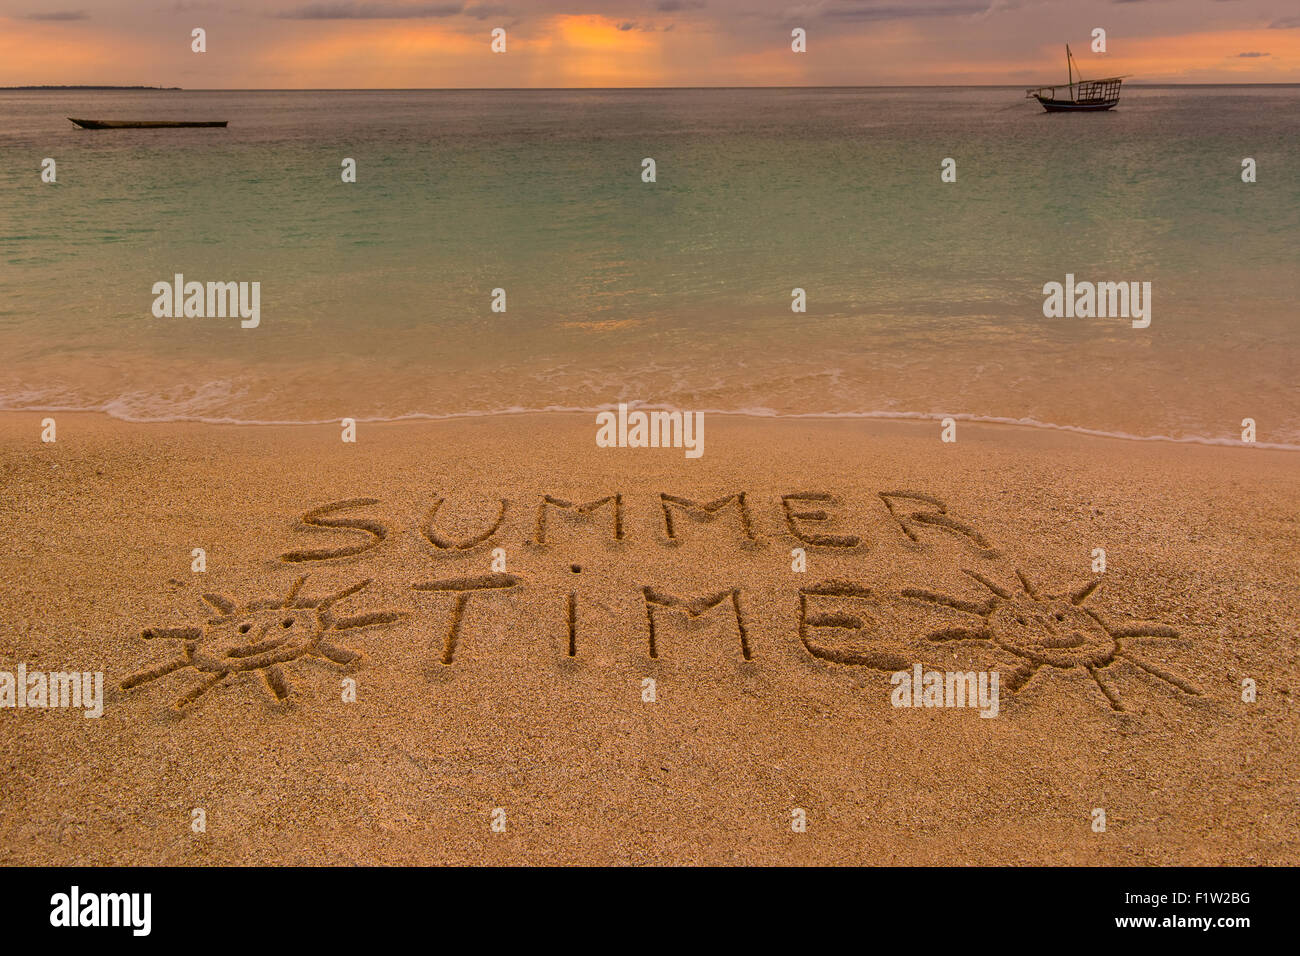 Auf dem Bild einen Strand bei Sonnenuntergang mit den Worten auf dem Sand "Sommerzeit". Stockfoto